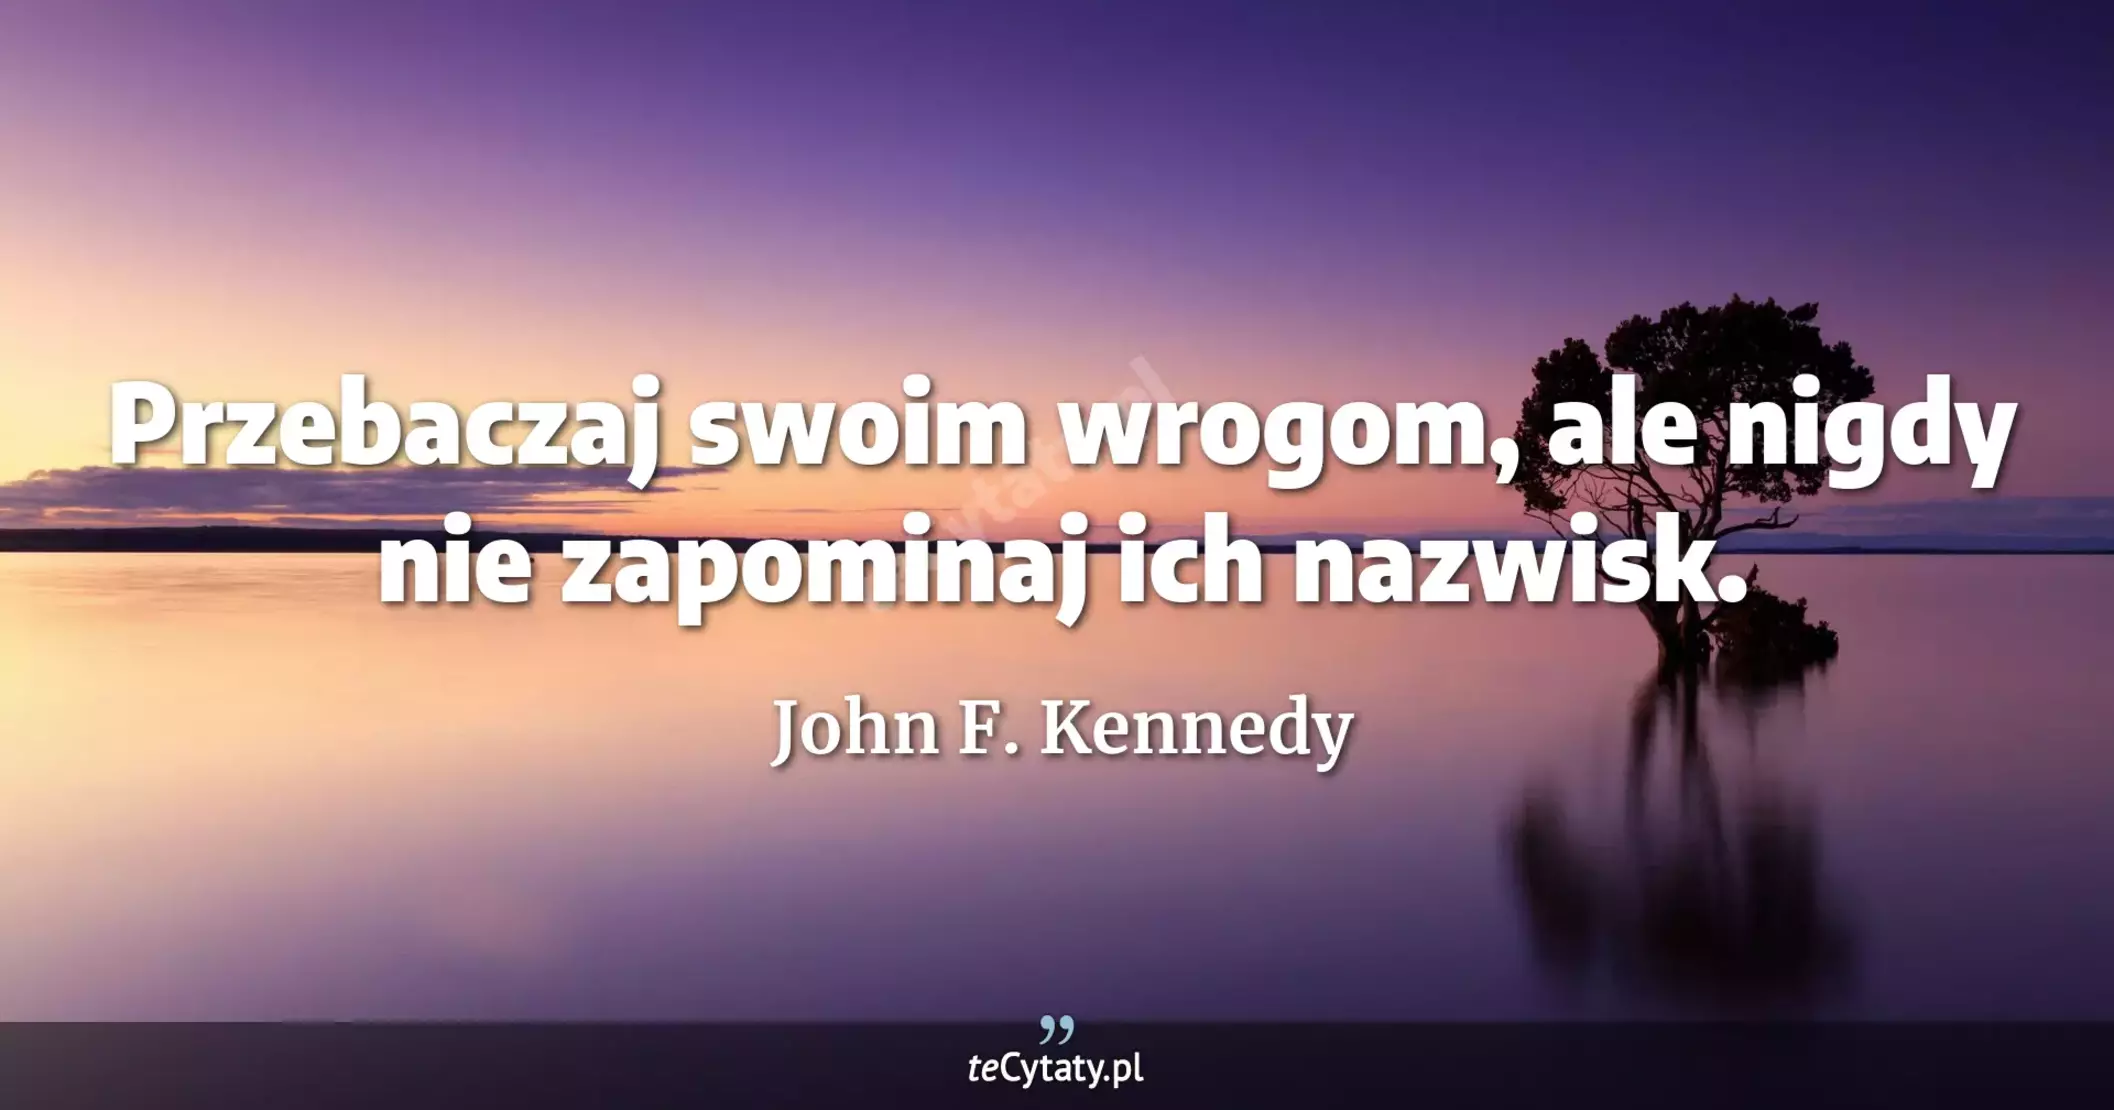 Przebaczaj swoim wrogom, ale nigdy nie zapominaj ich nazwisk. - John F. Kennedy